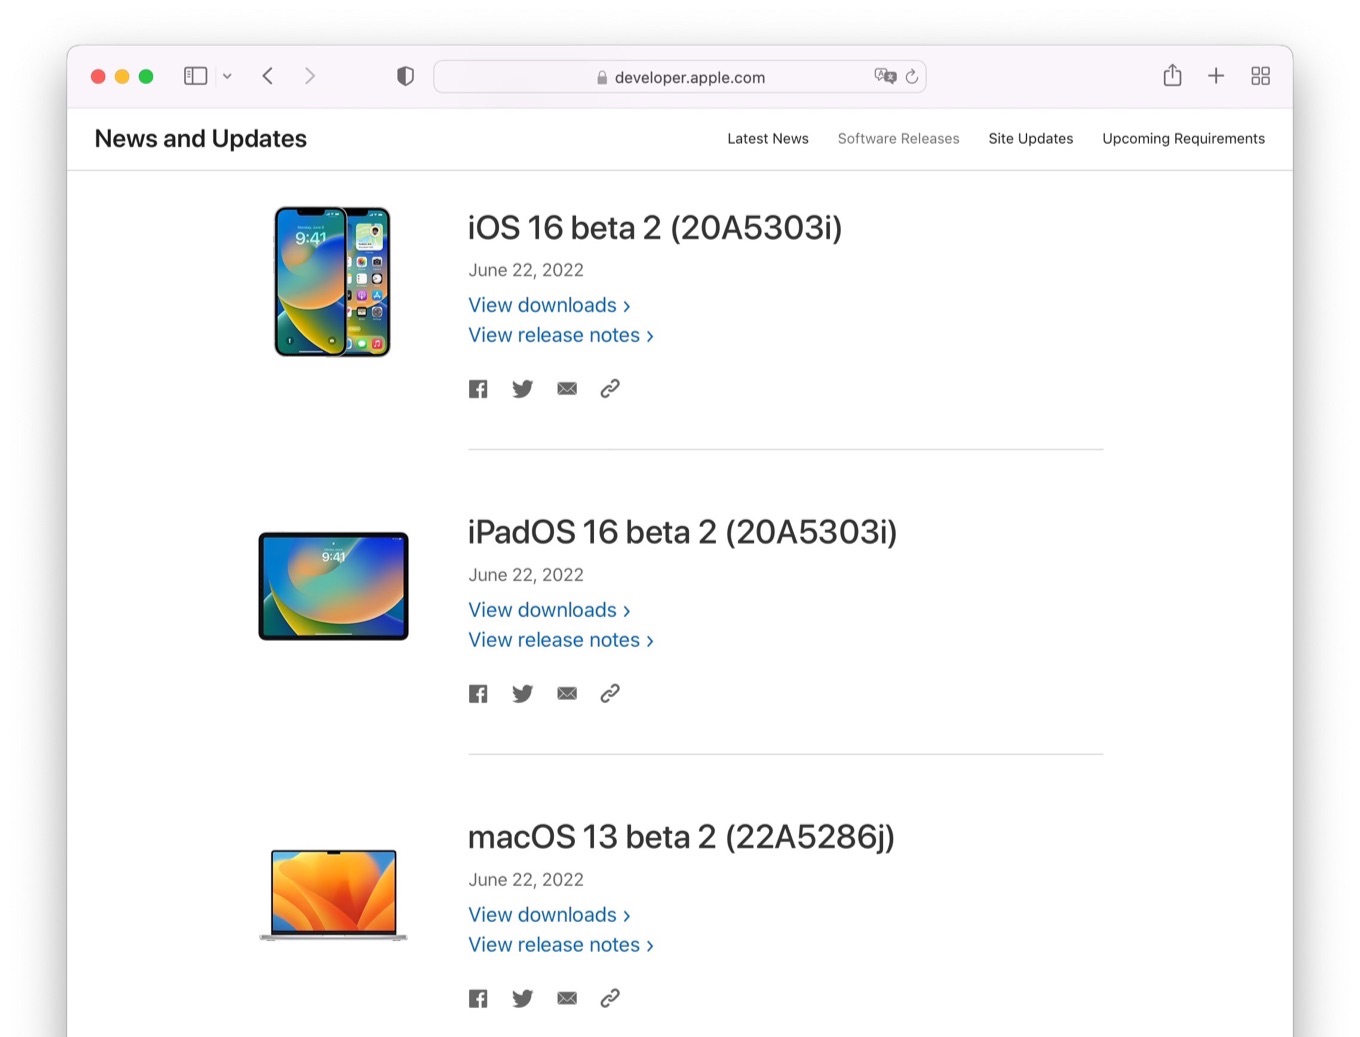 macOS 13 beta 2 (22A5286j